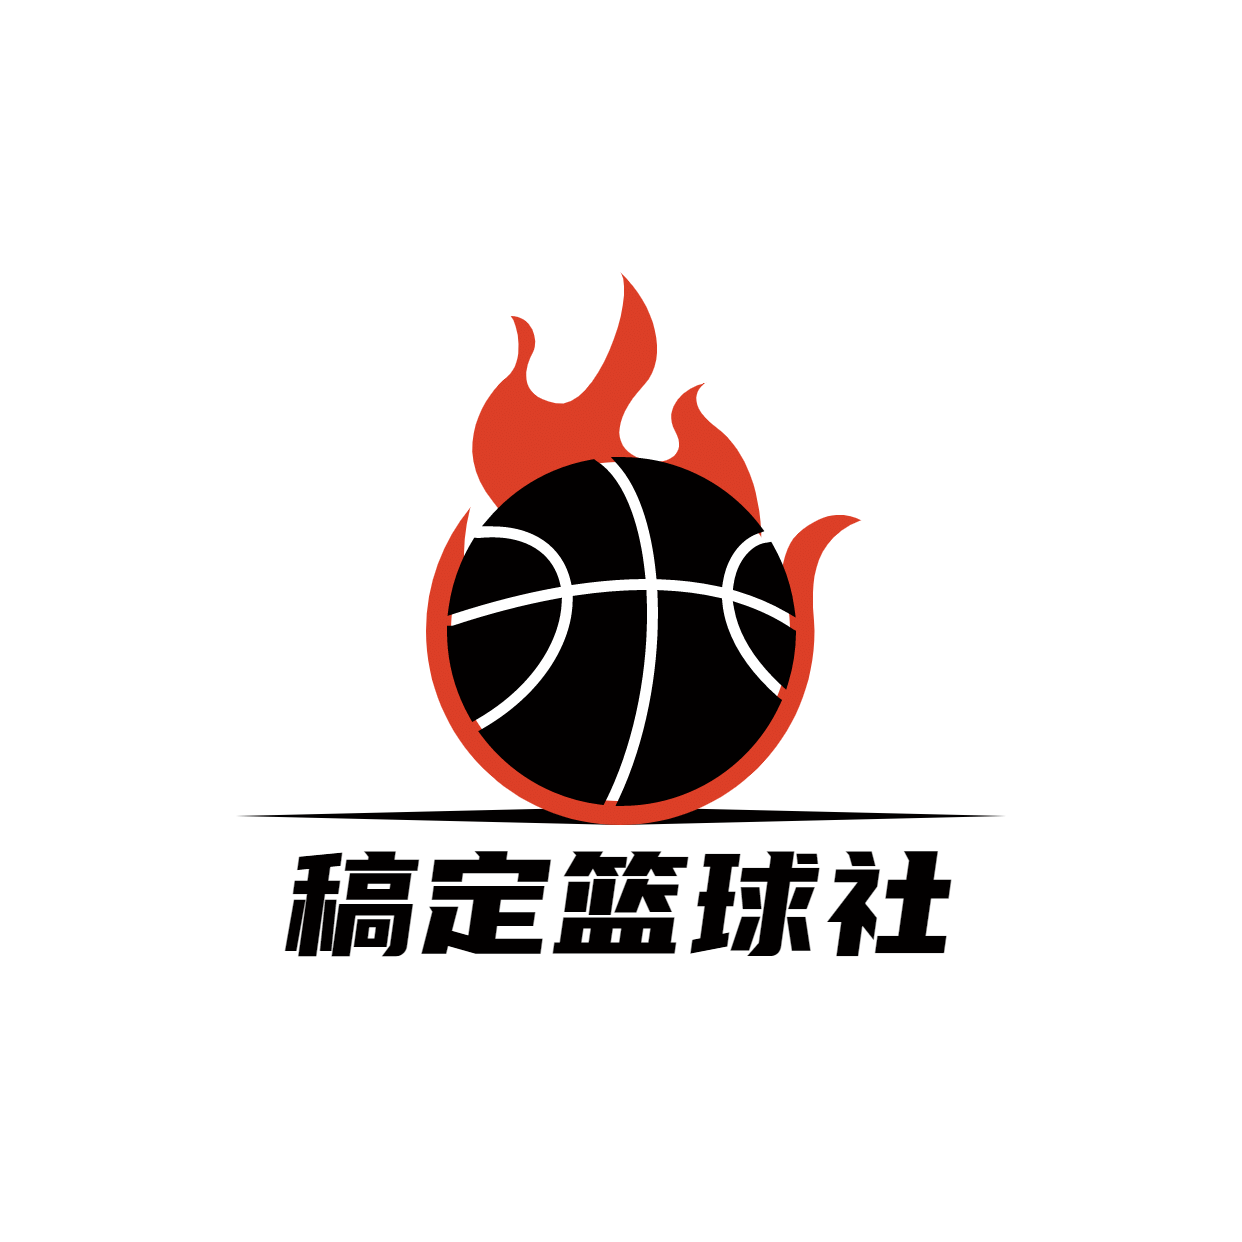 教育培训篮球社简约清新logo预览效果